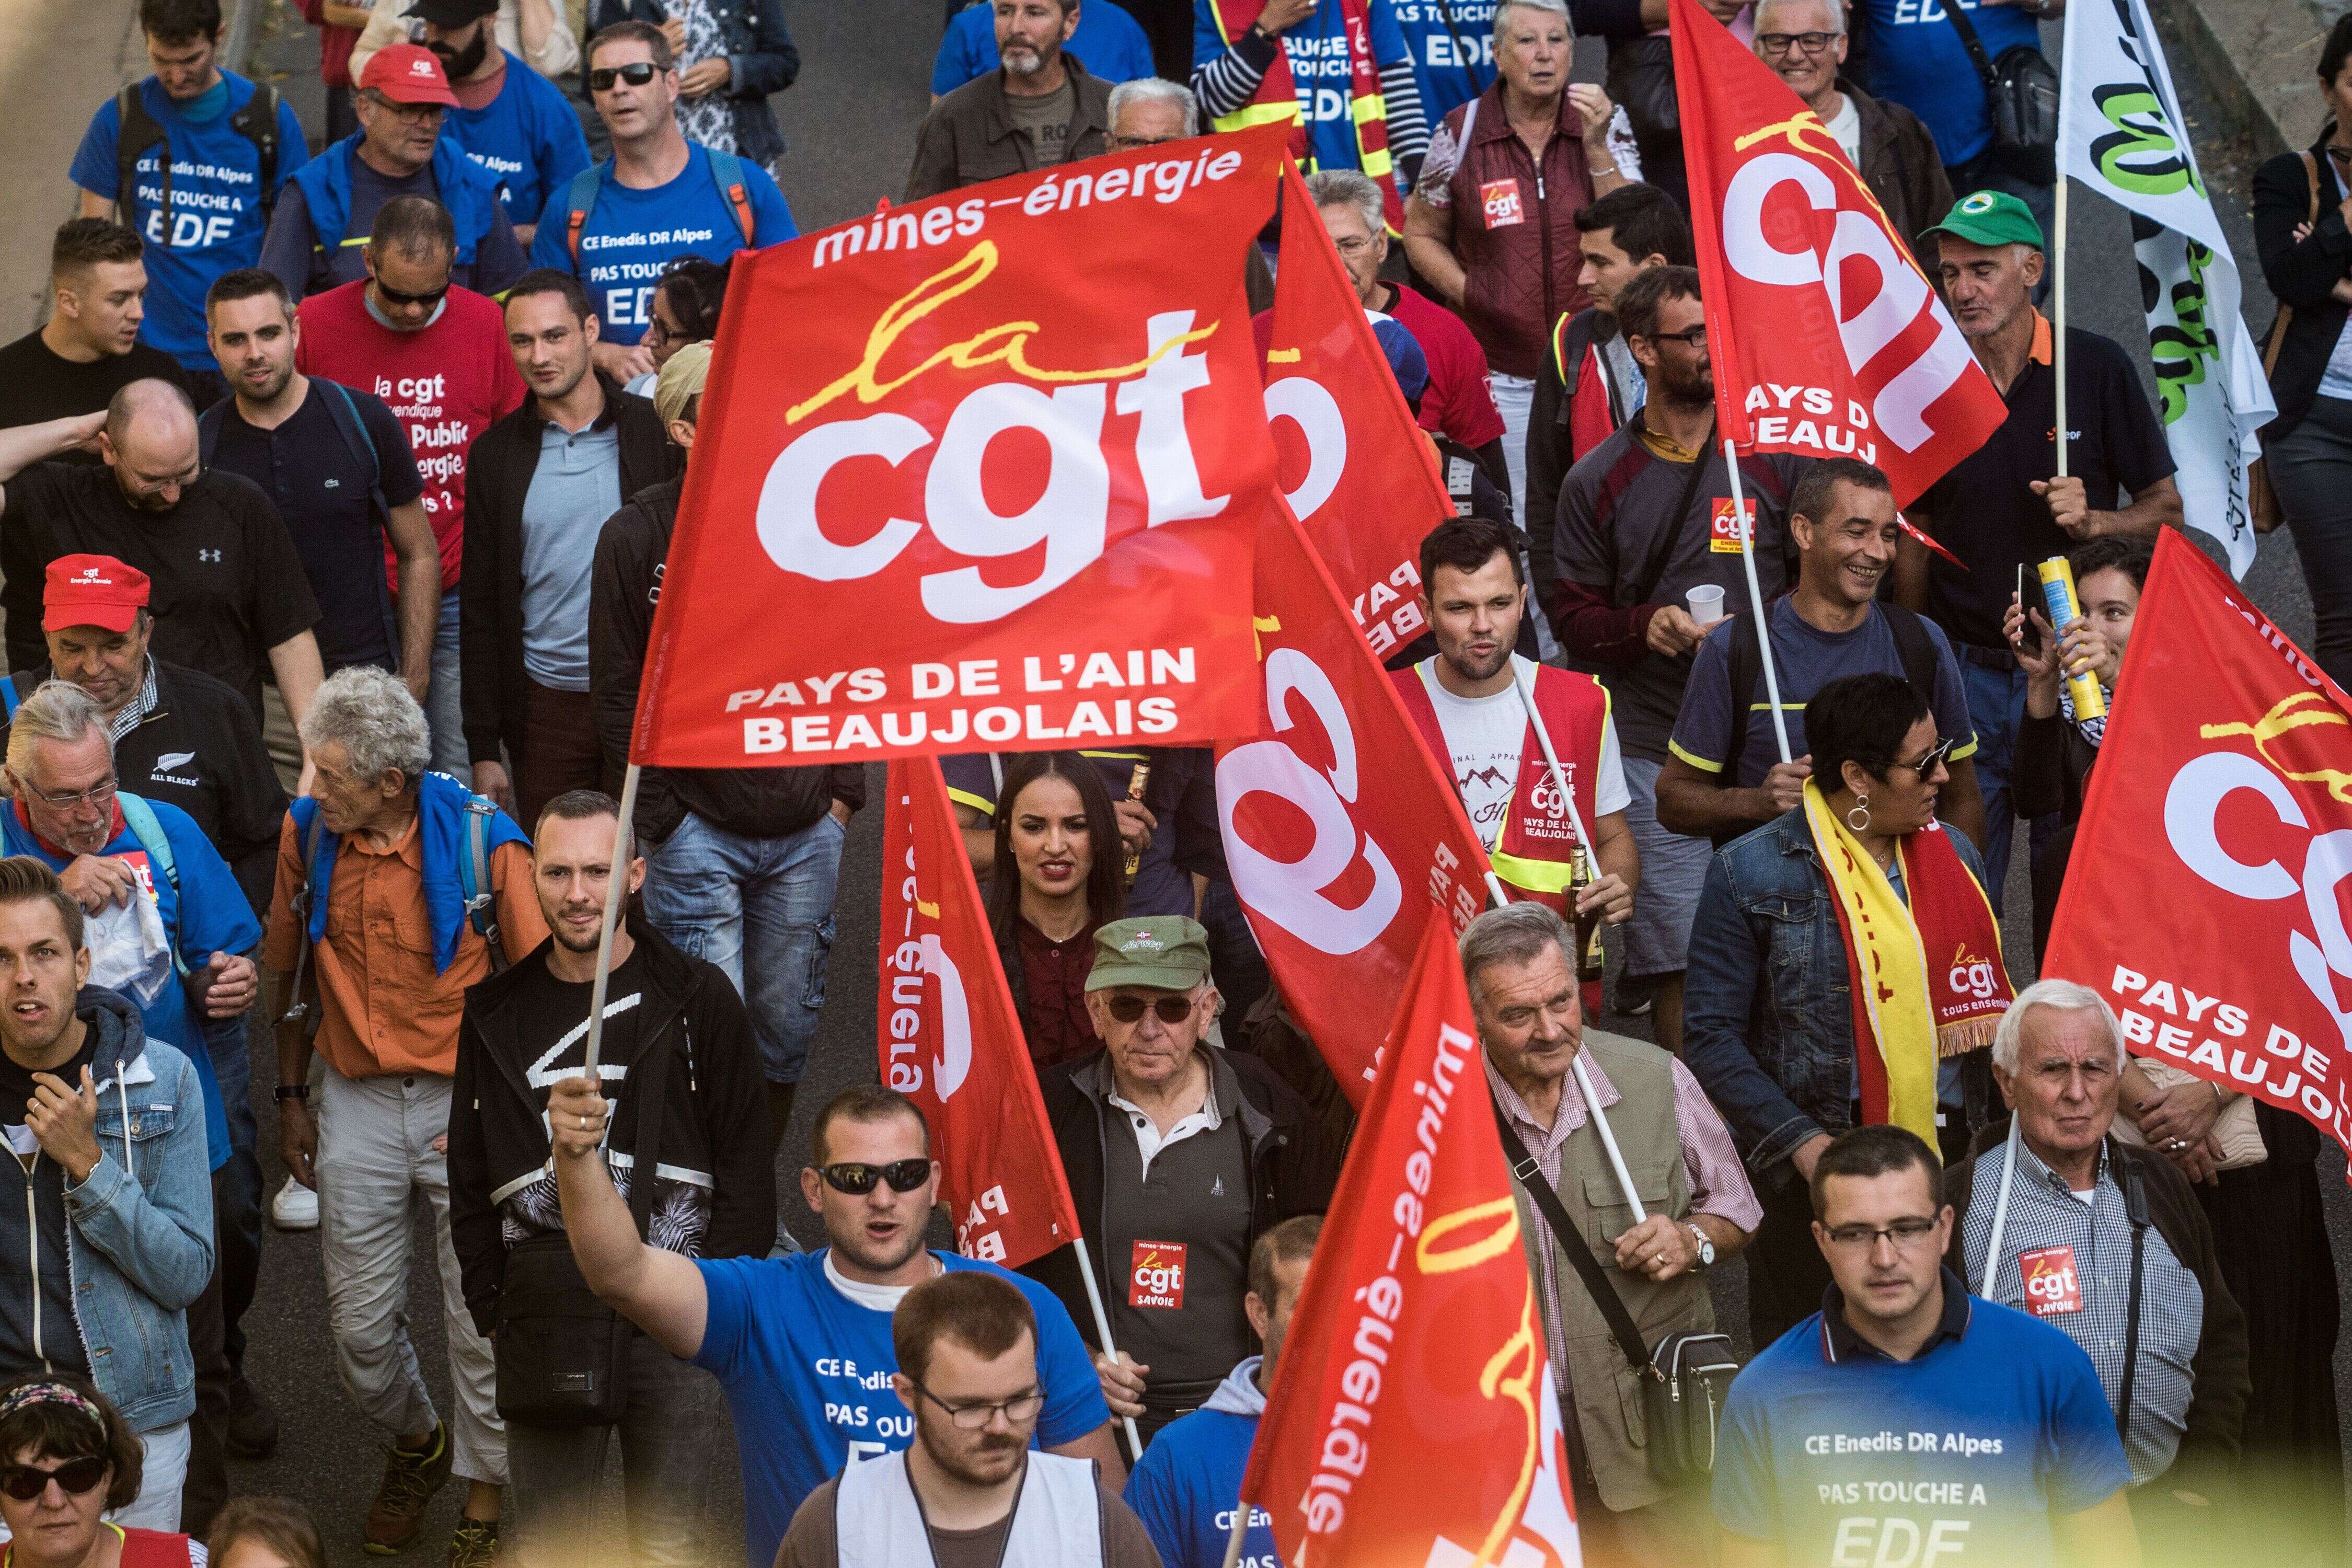 C'est à l'appel de la CGT que la plupart des organisations syndicales descendent dans les rues françaises ce mardi 24 septembre, pour une nouvelle grève contre la réforme des retraites.